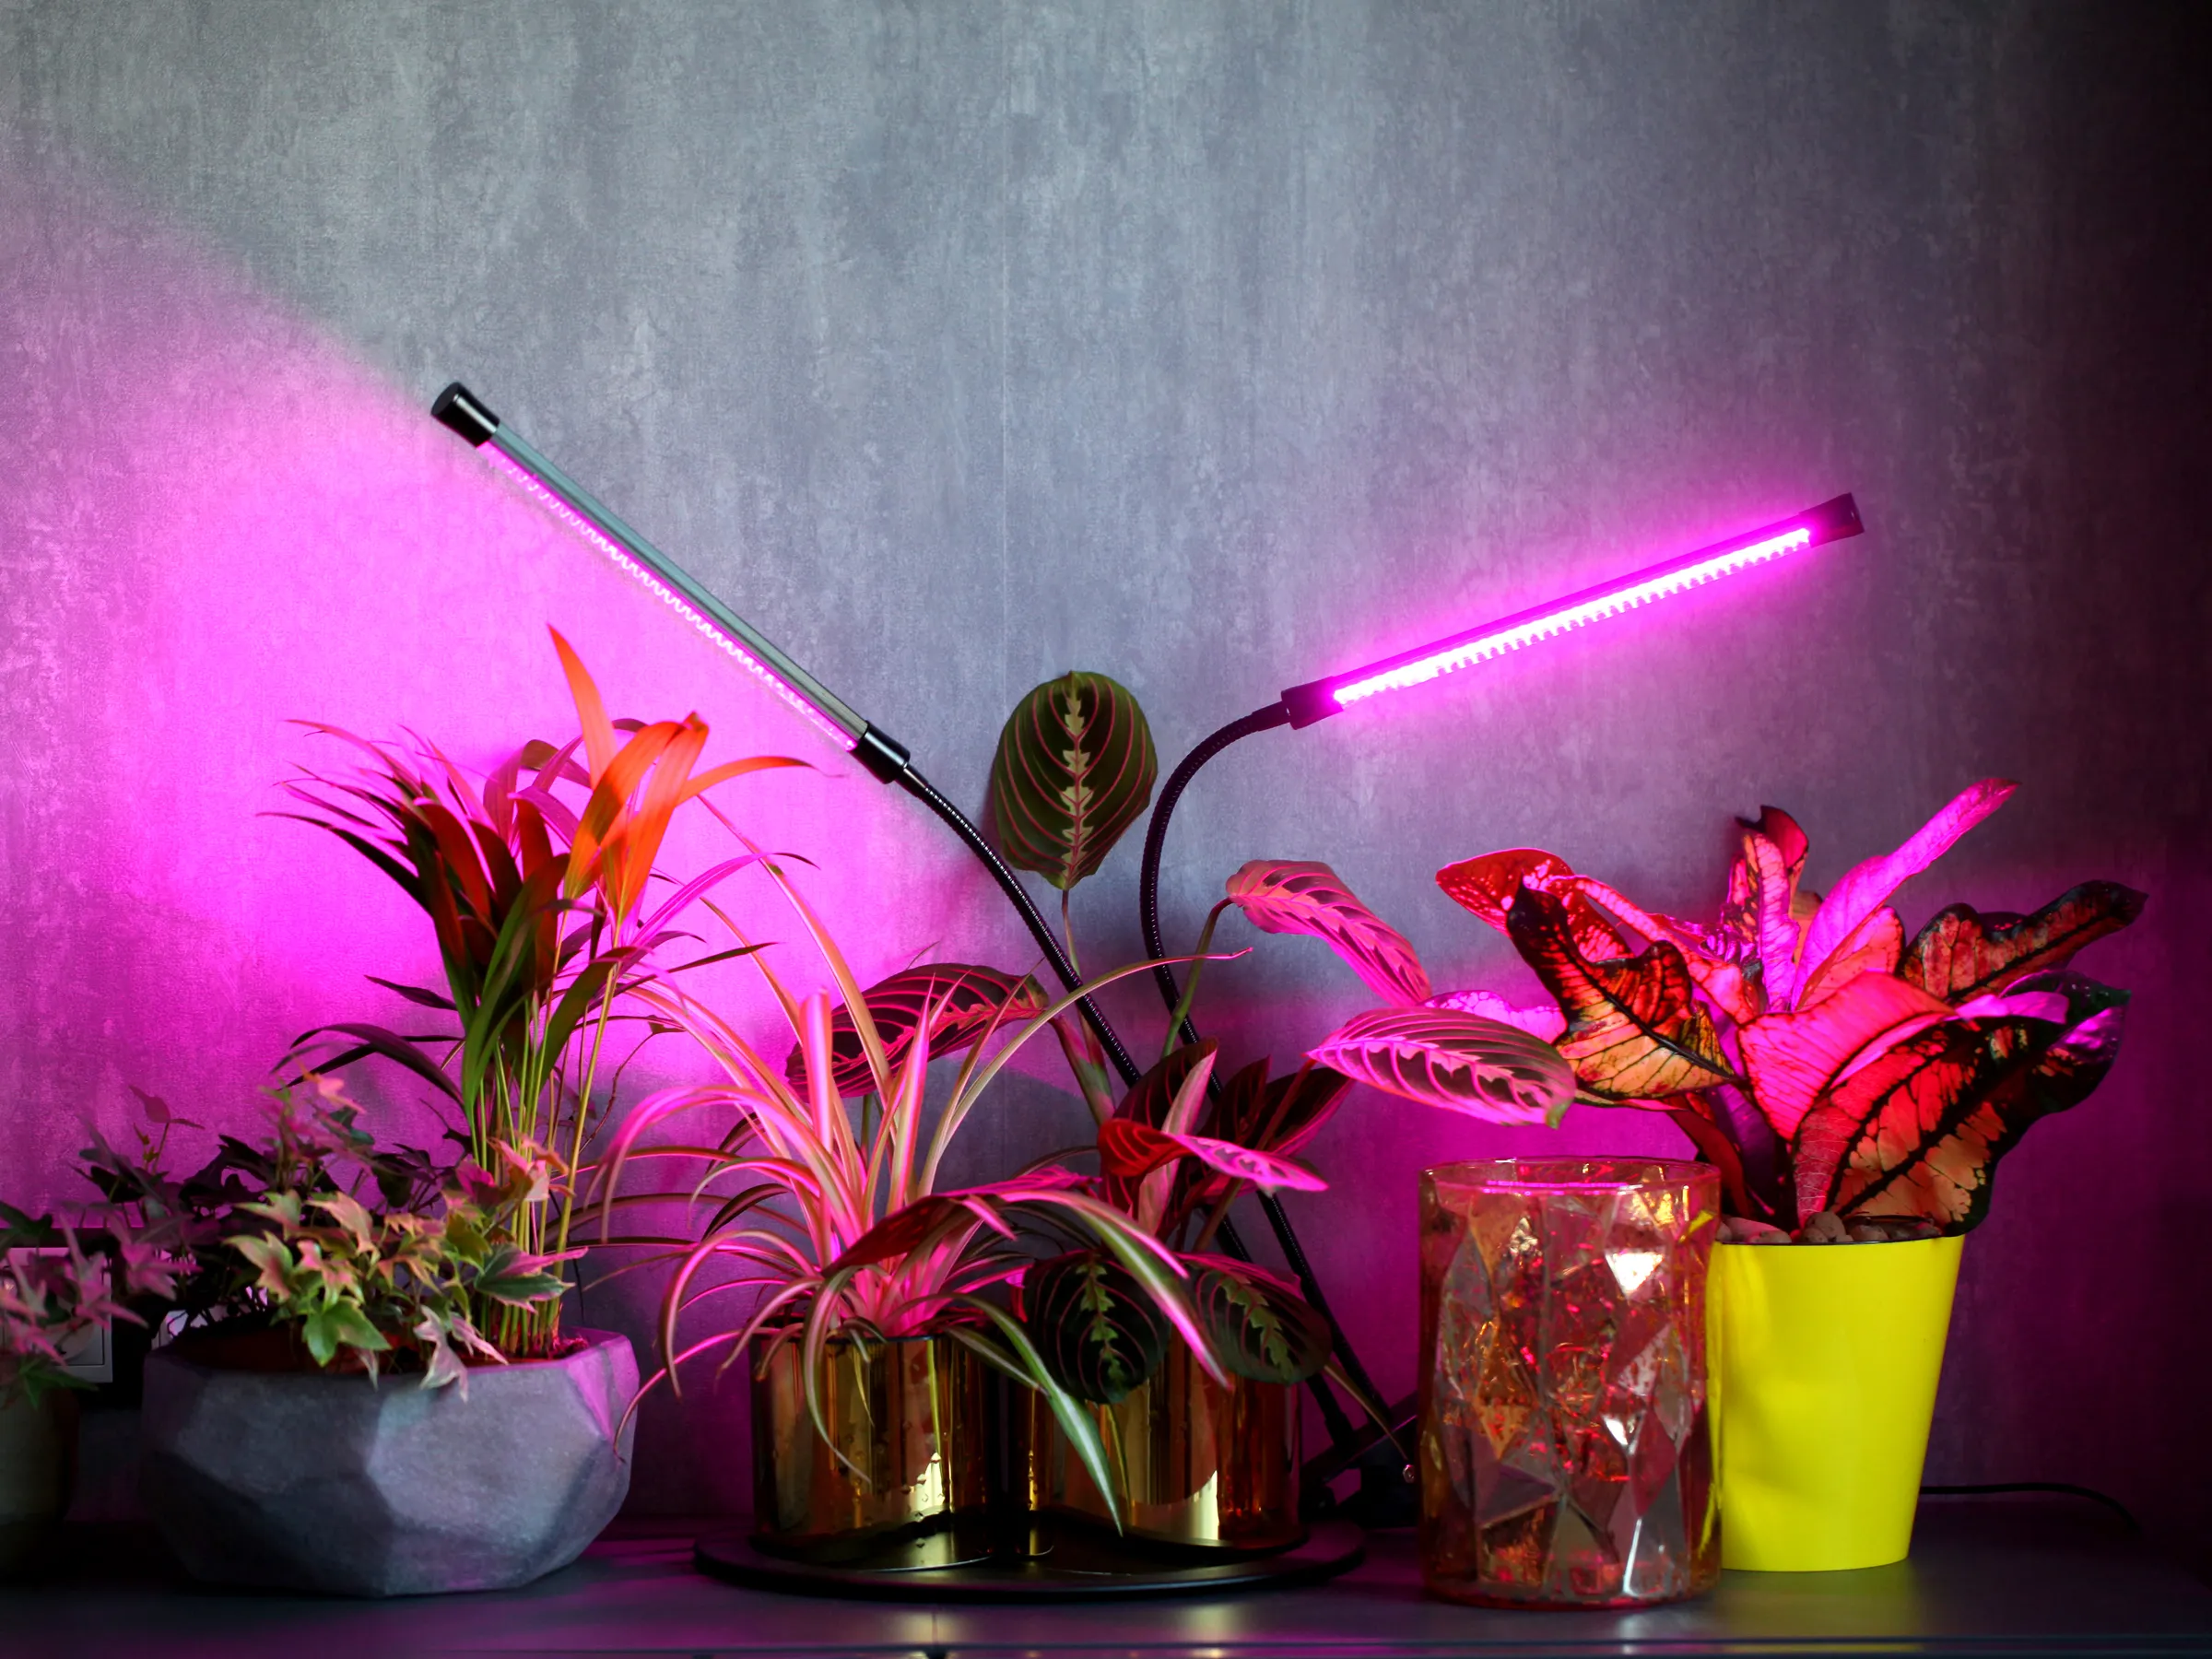 grow lights for indoor plants